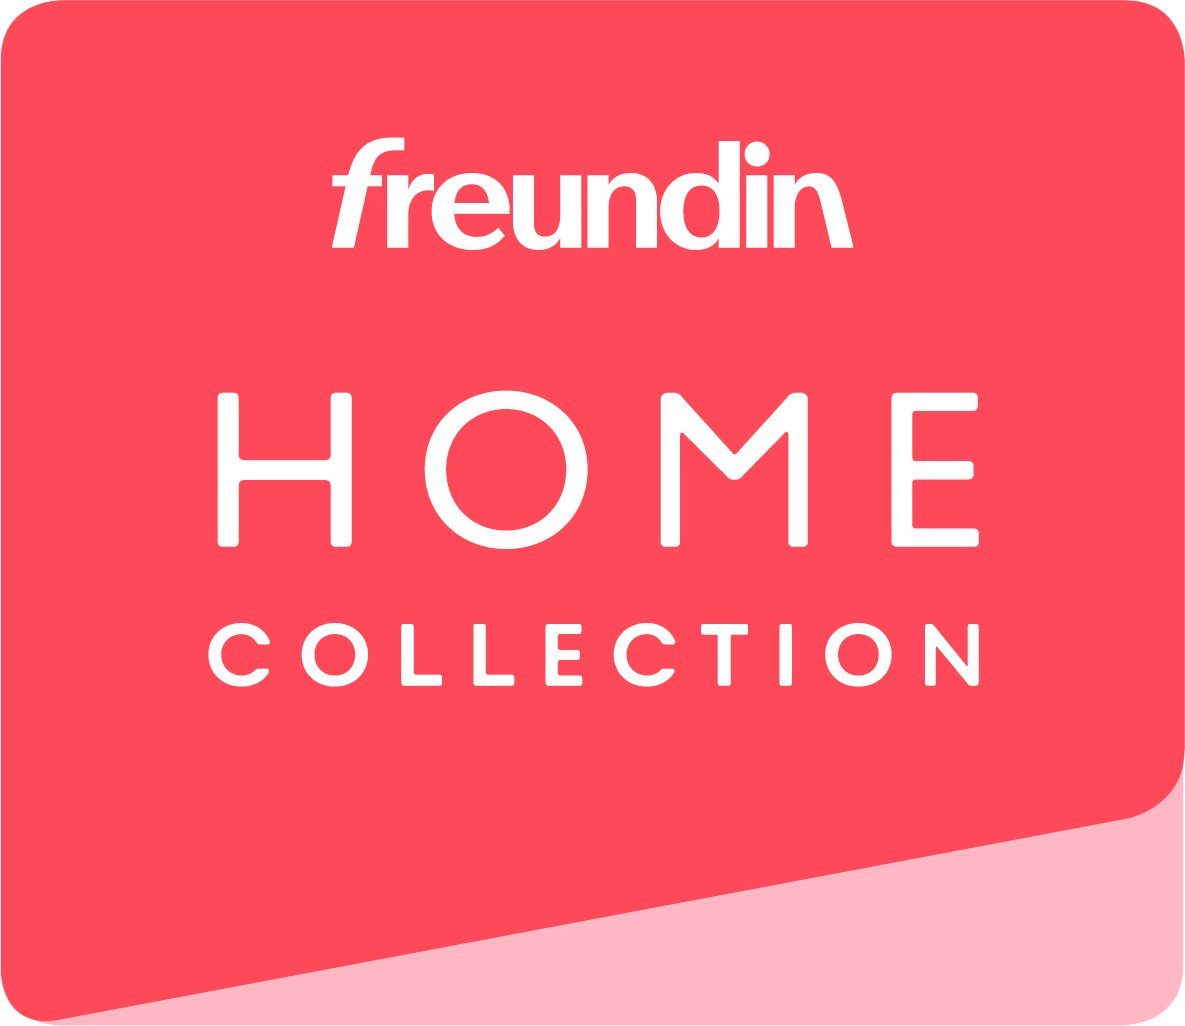 Collection aus skandinavischen freundin der Home MERLE andas im Design, Kleiderschrank